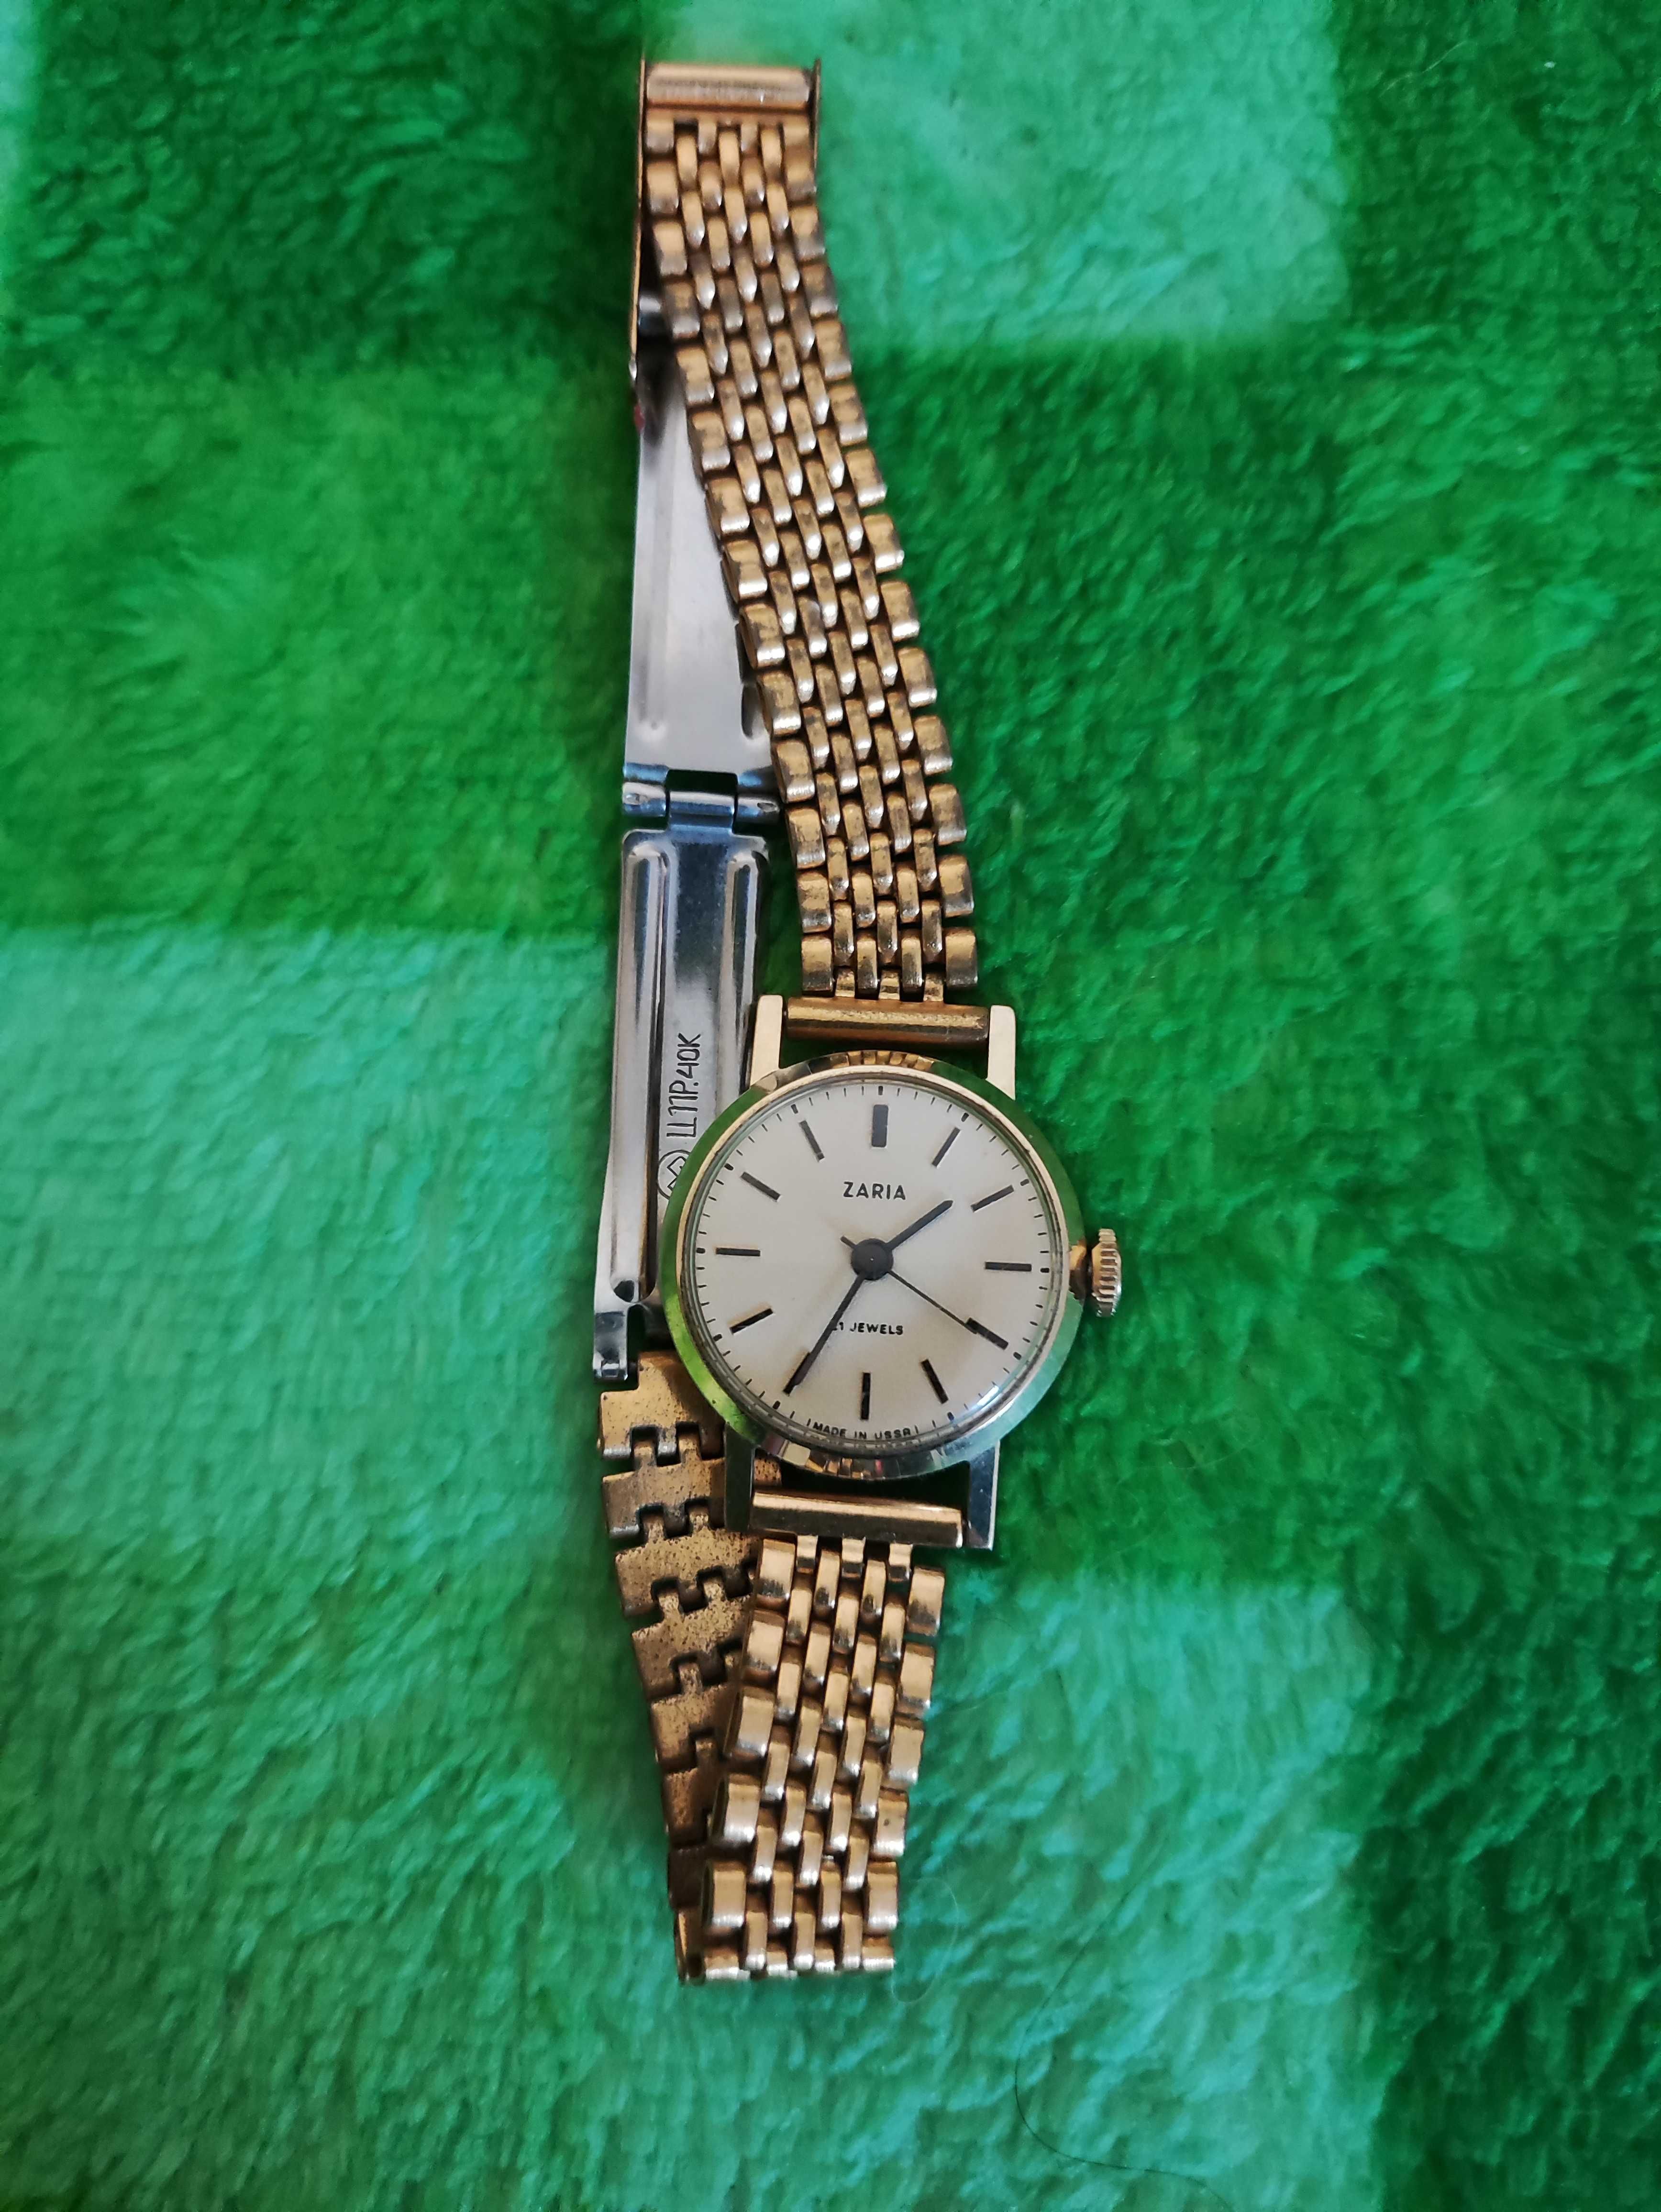 Zegarek Zaria damski Zegar  analogowy nakrecany pozłacanyna rękę złoty